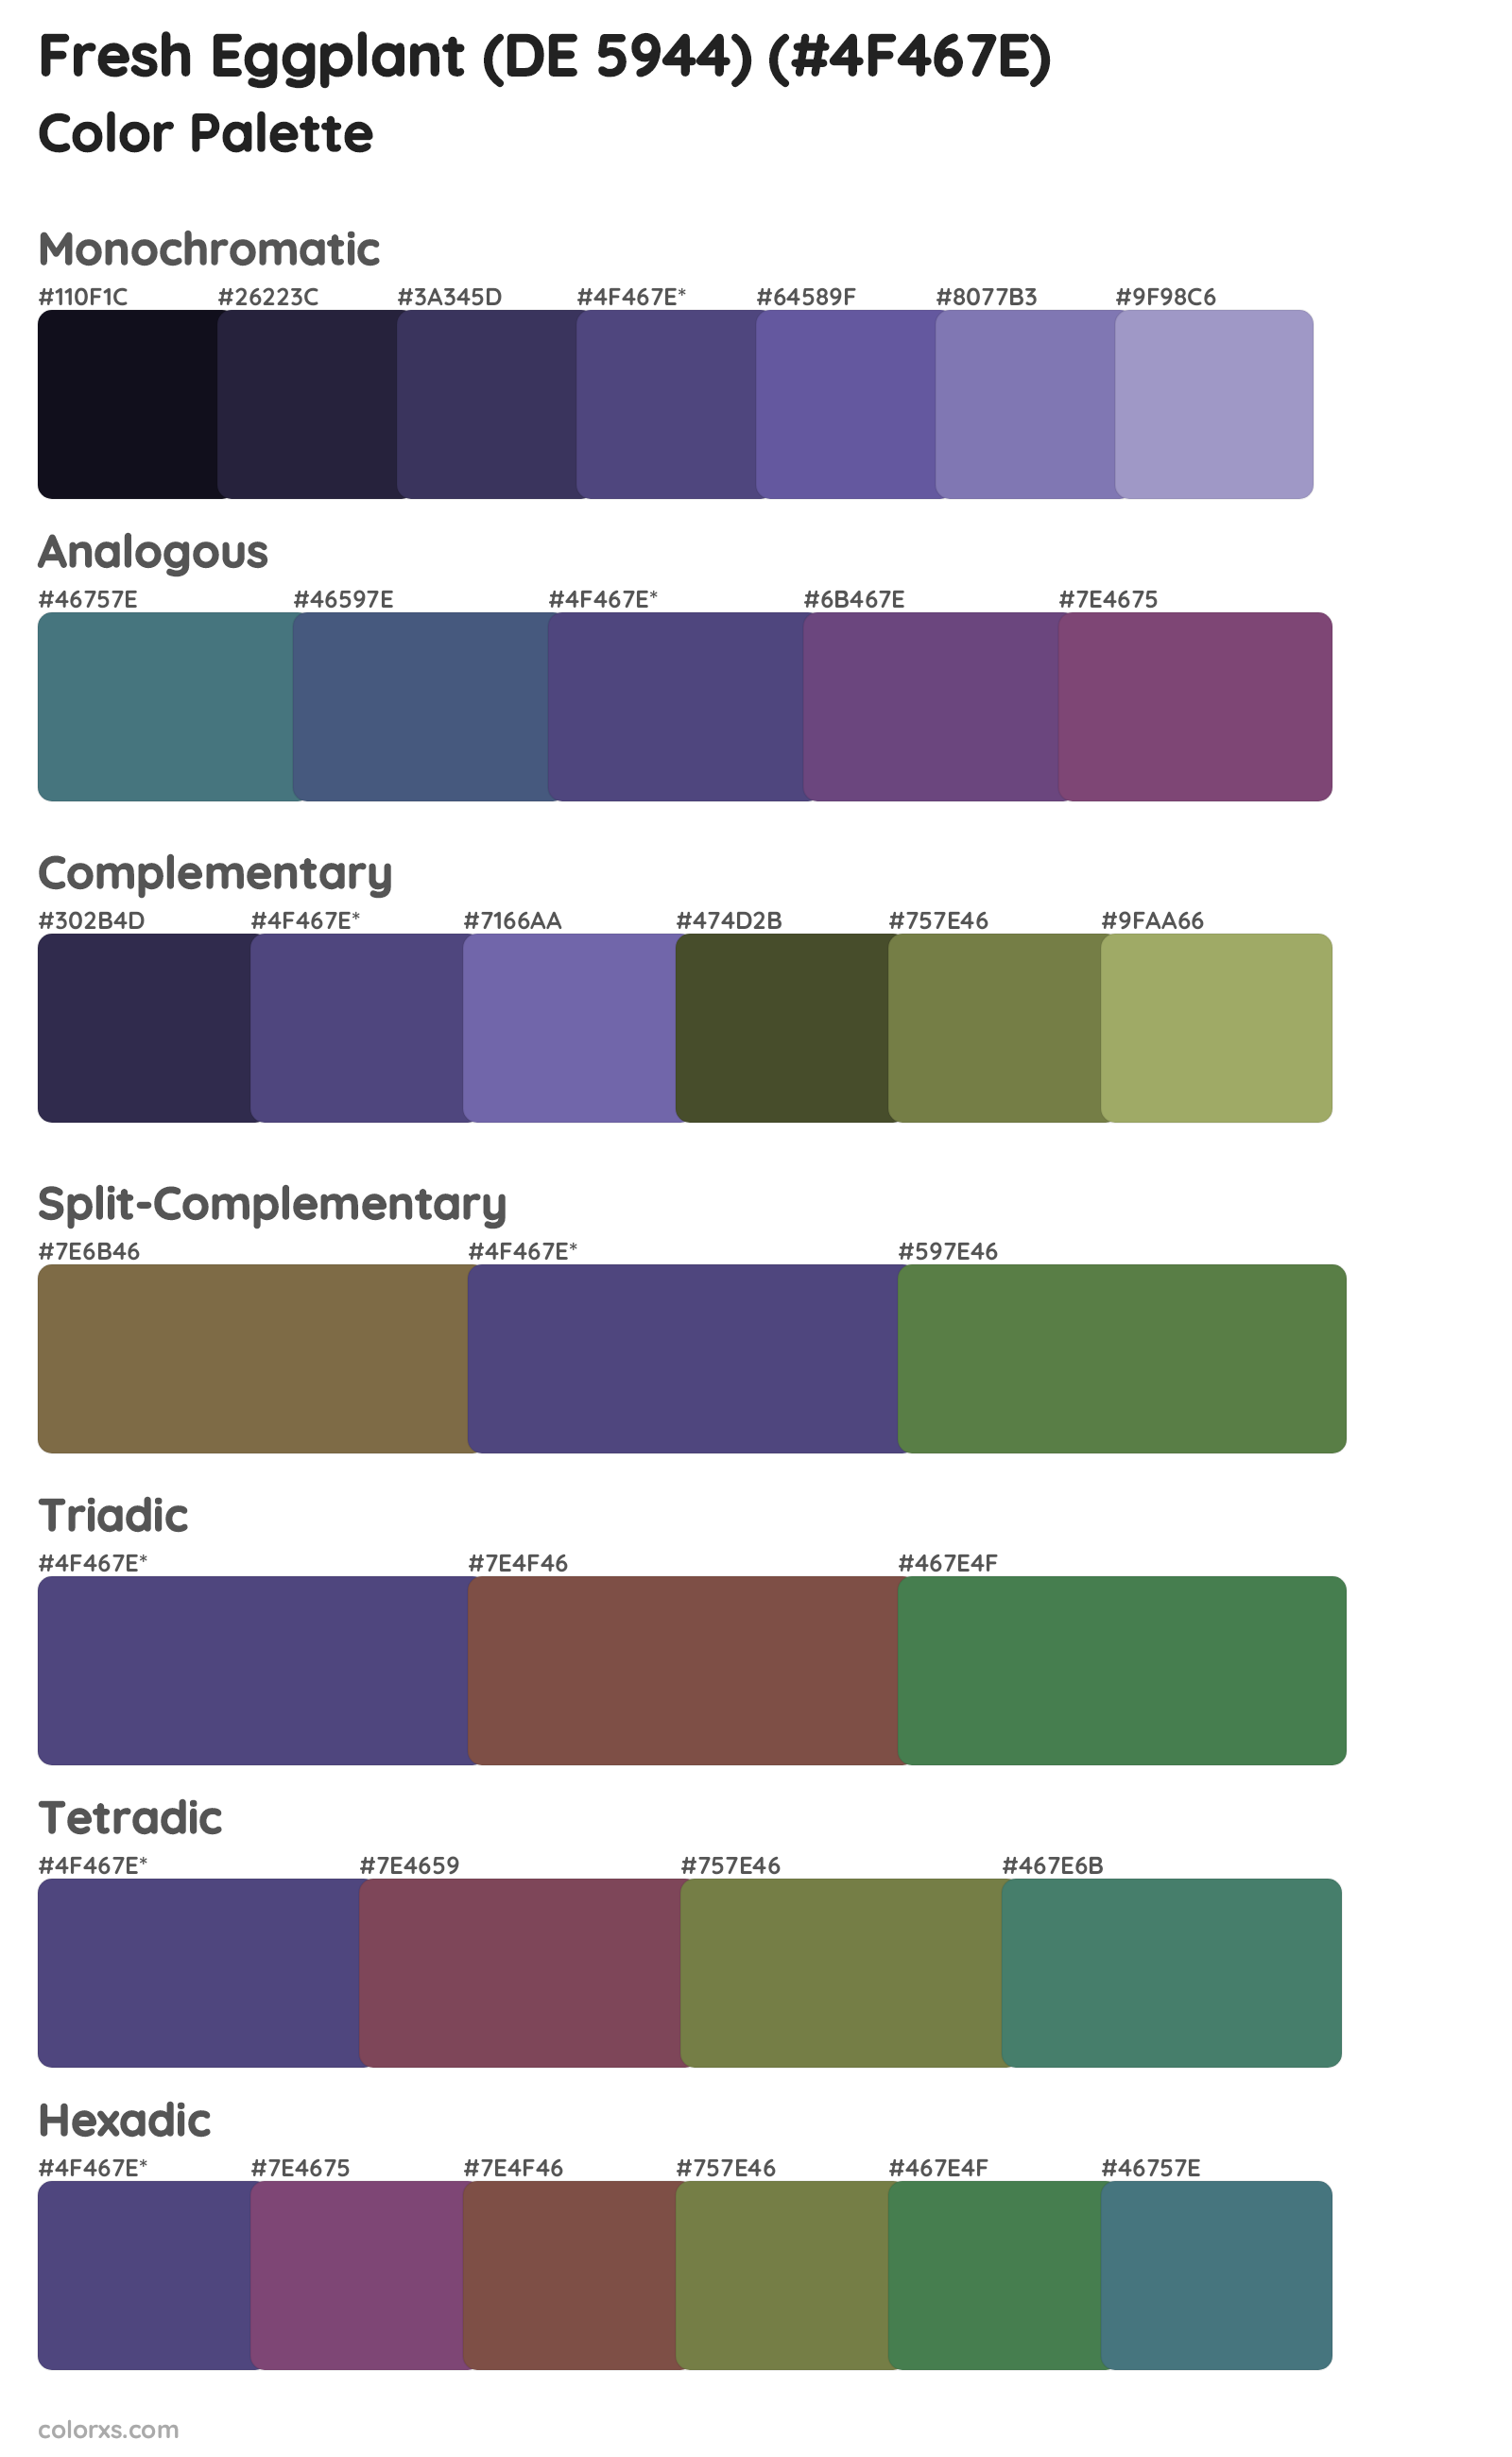 Fresh Eggplant (DE 5944) Color Scheme Palettes